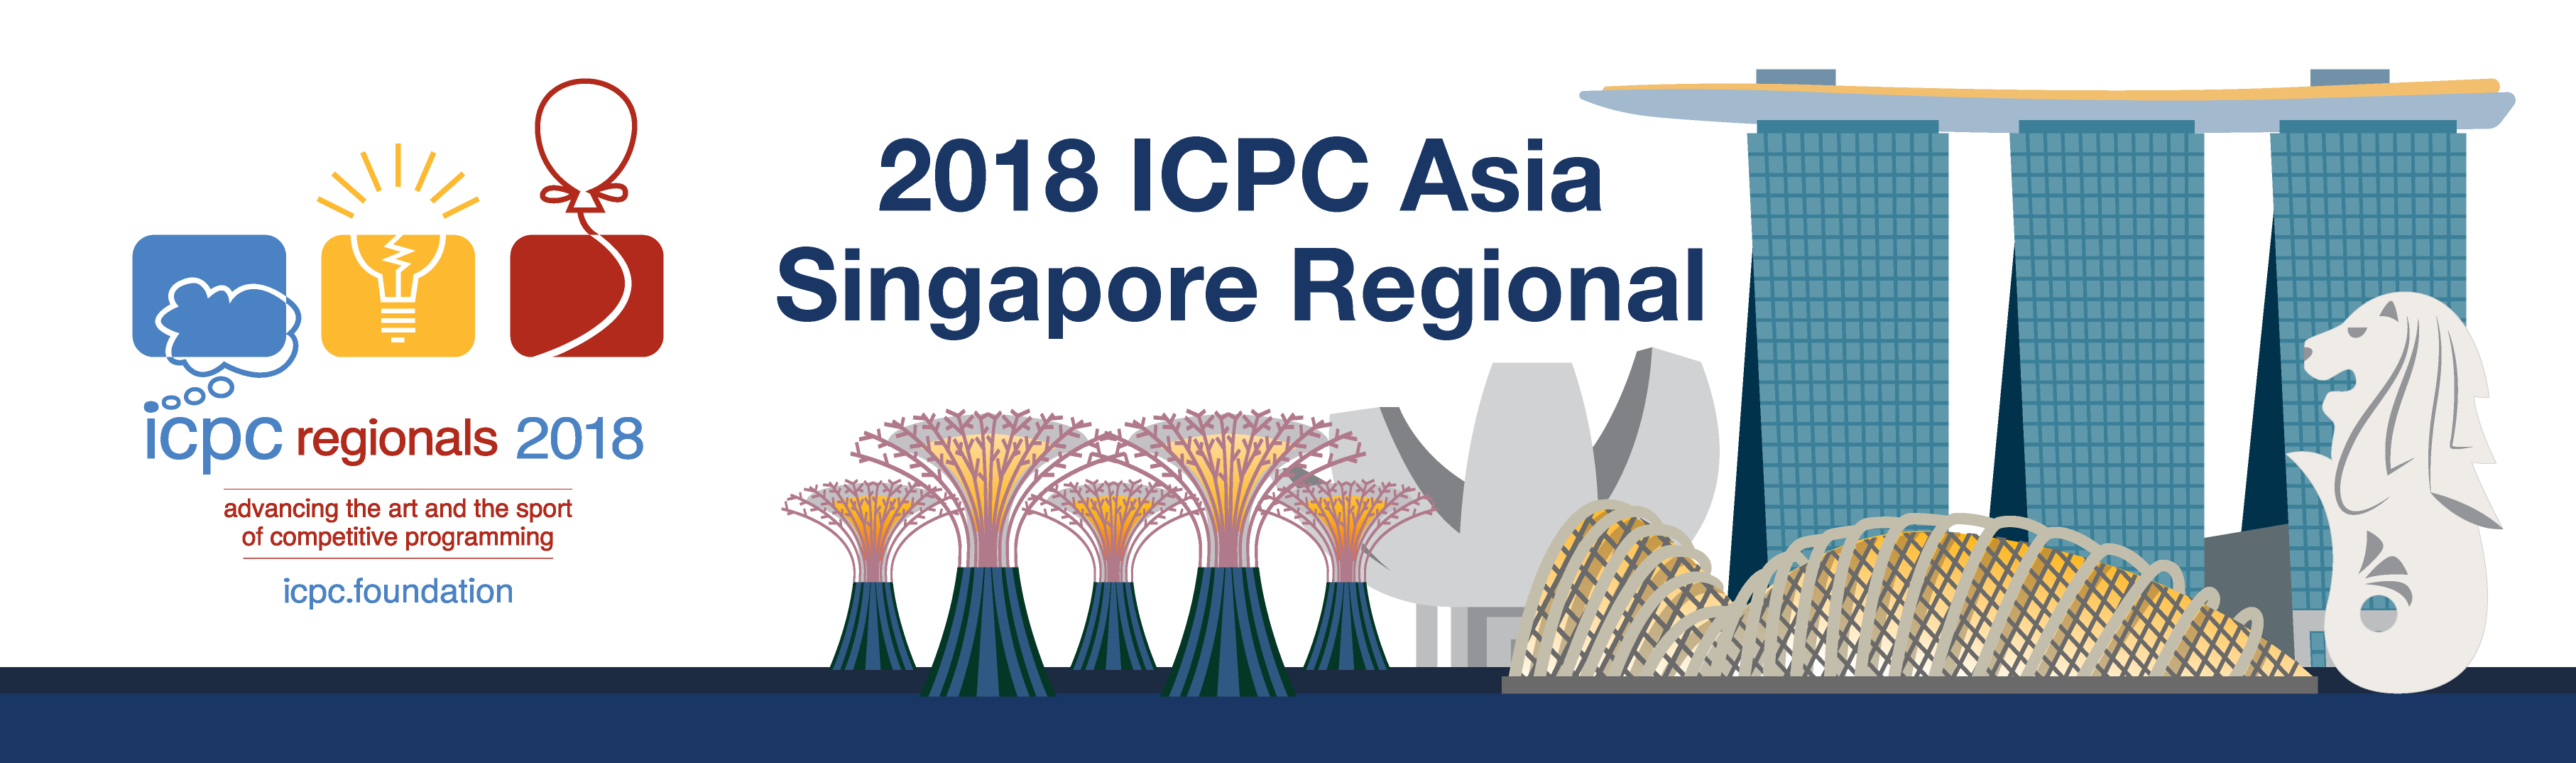 2018 ICPC Asia Singapore Regional Contest